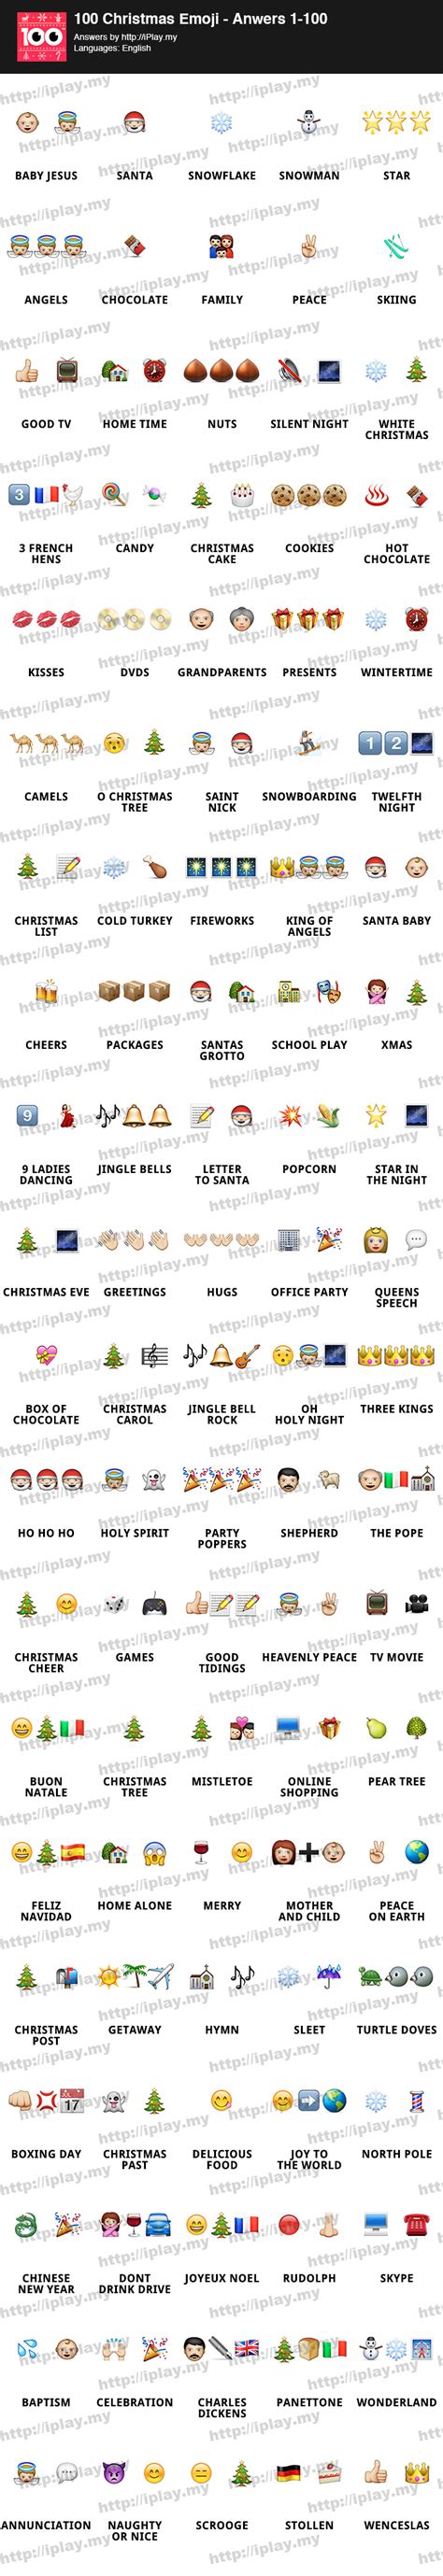 100 Christmas Emoji Answers | iPlay.my